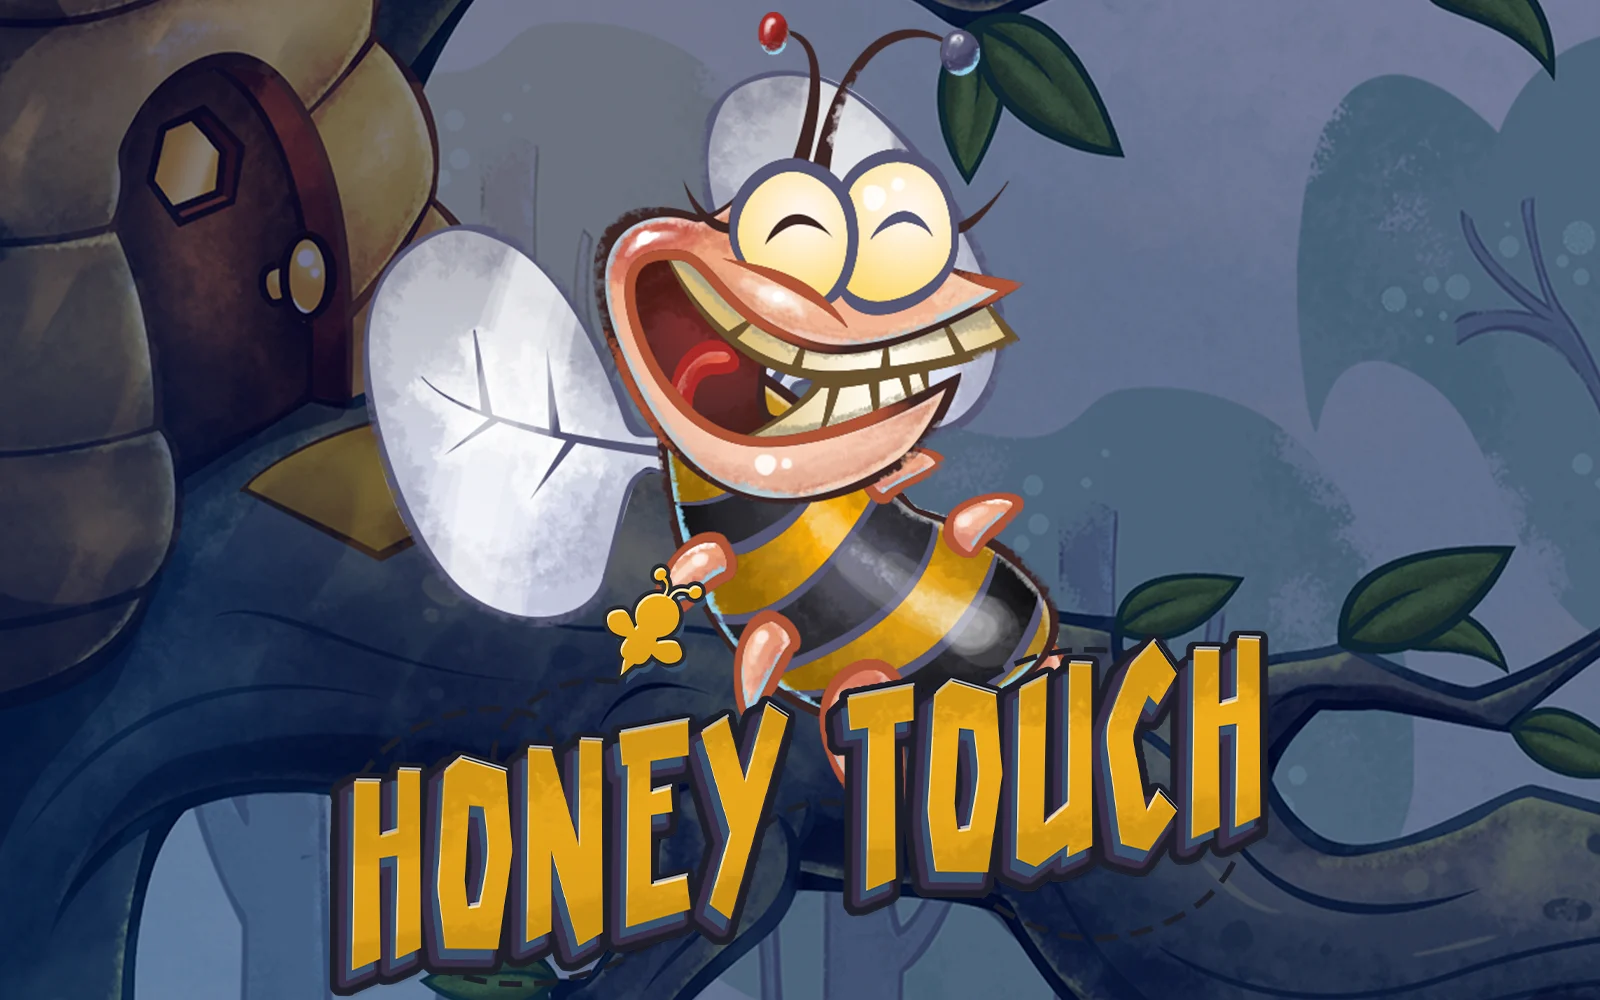 Speel Honey Touch op Starcasino.be online casino